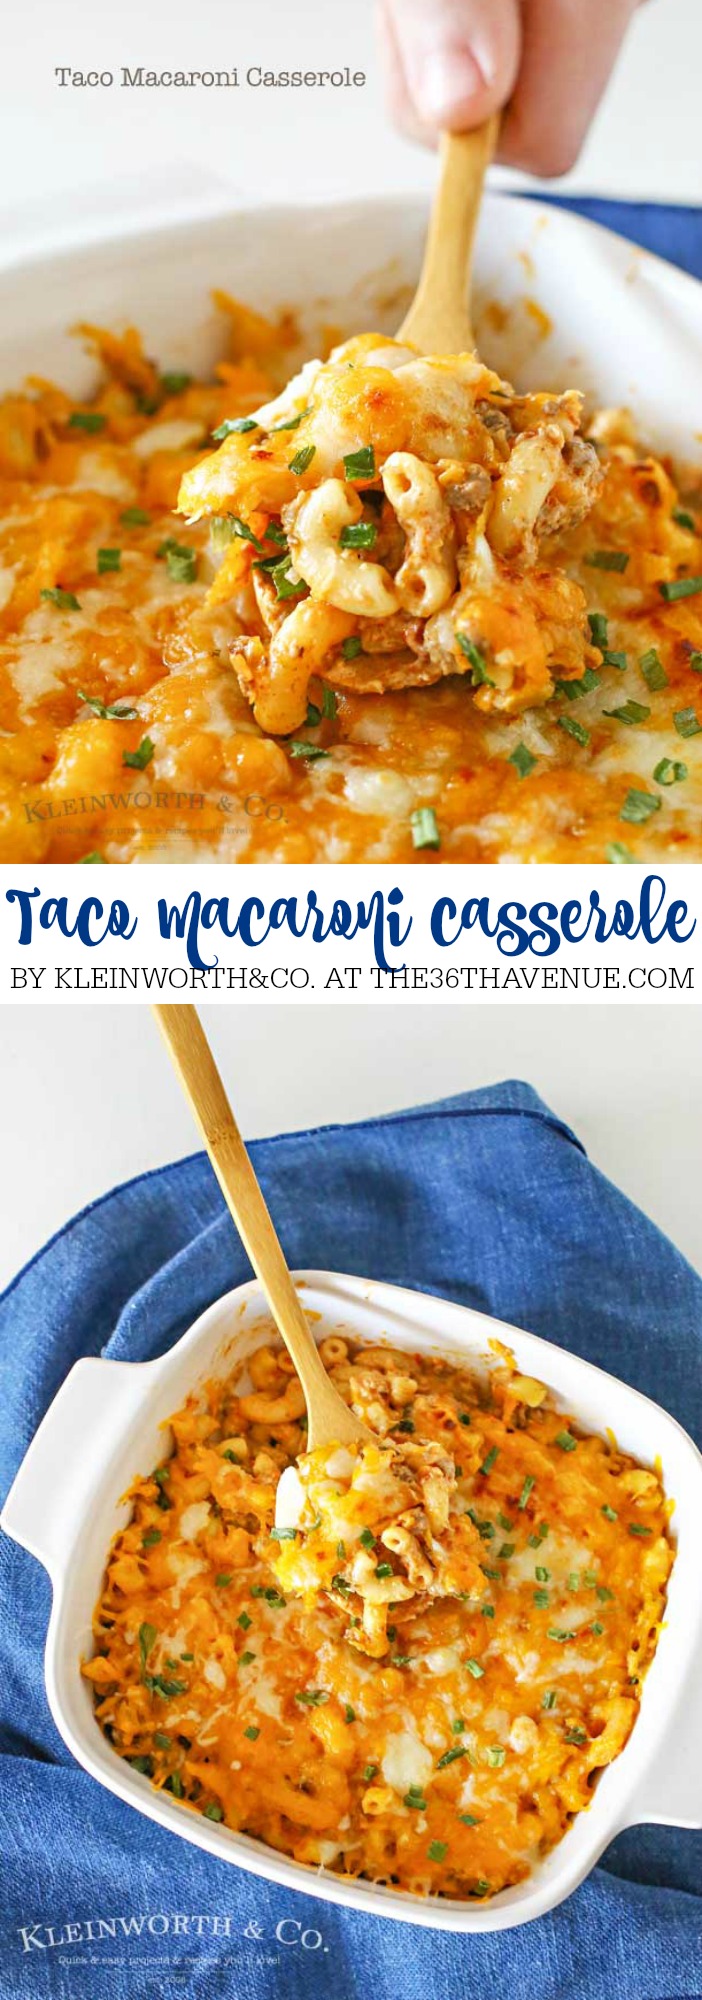 Denna Taco Macaroni Casserole har alla smaker av din favorit taco, nötkött, kryddor... Åh mitt ord, det är läckert! PIN-knappen nu och baka den senare!